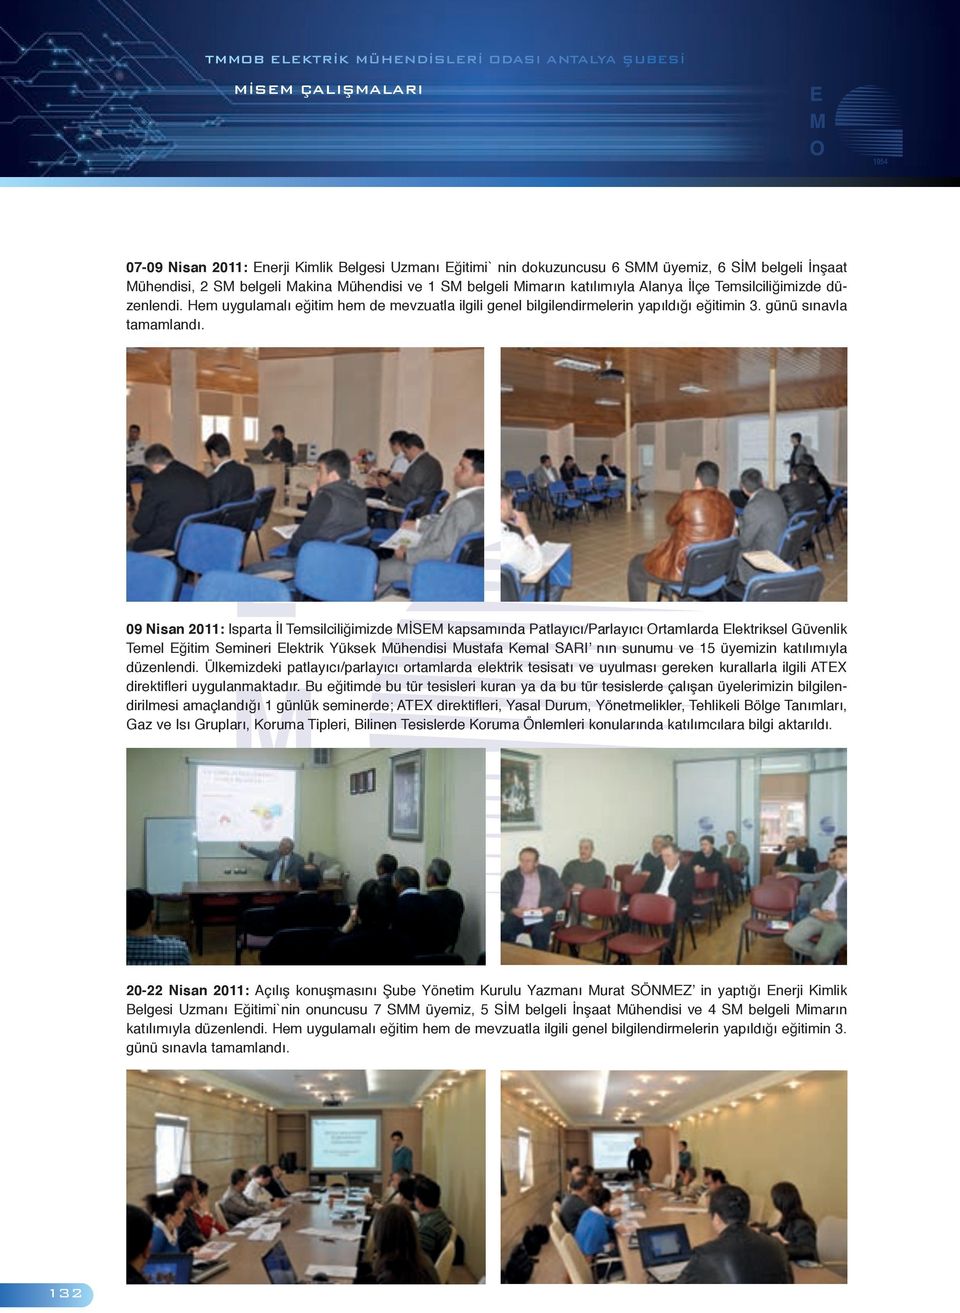 09 Nisan 2011: Isparta İl Temsilciliğimizde MİSEM kapsamında Patlayıcı/Parlayıcı Ortamlarda Elektriksel Güvenlik Temel Eğitim Semineri Elektrik Yüksek Mühendisi Mustafa Kemal SARI nın sunumu ve 15